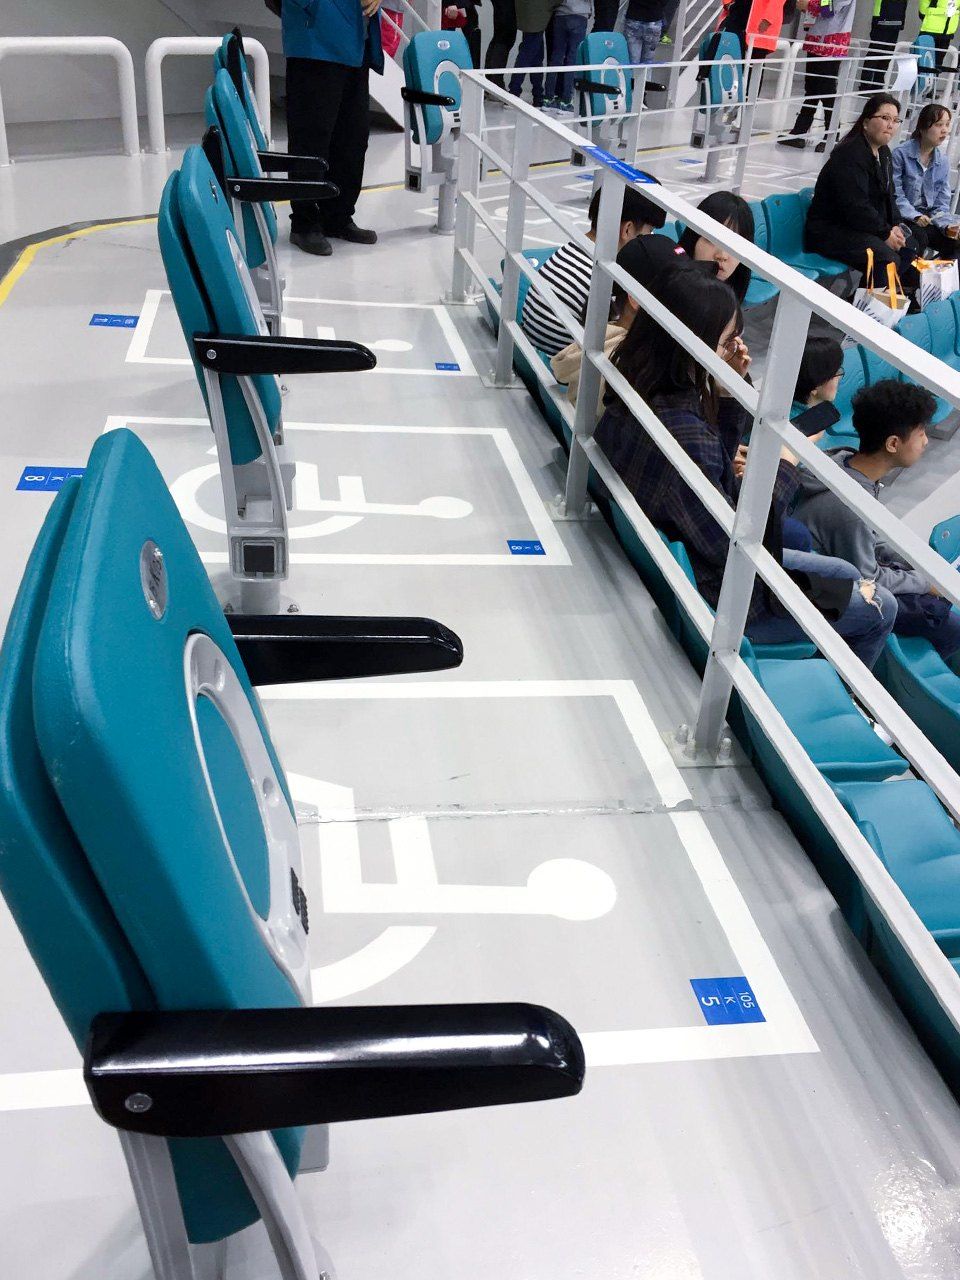 Места для колясочников хоккейной арены в Пхёнчхане. Двое колясочников не смогут разместиться рядом друг с другом